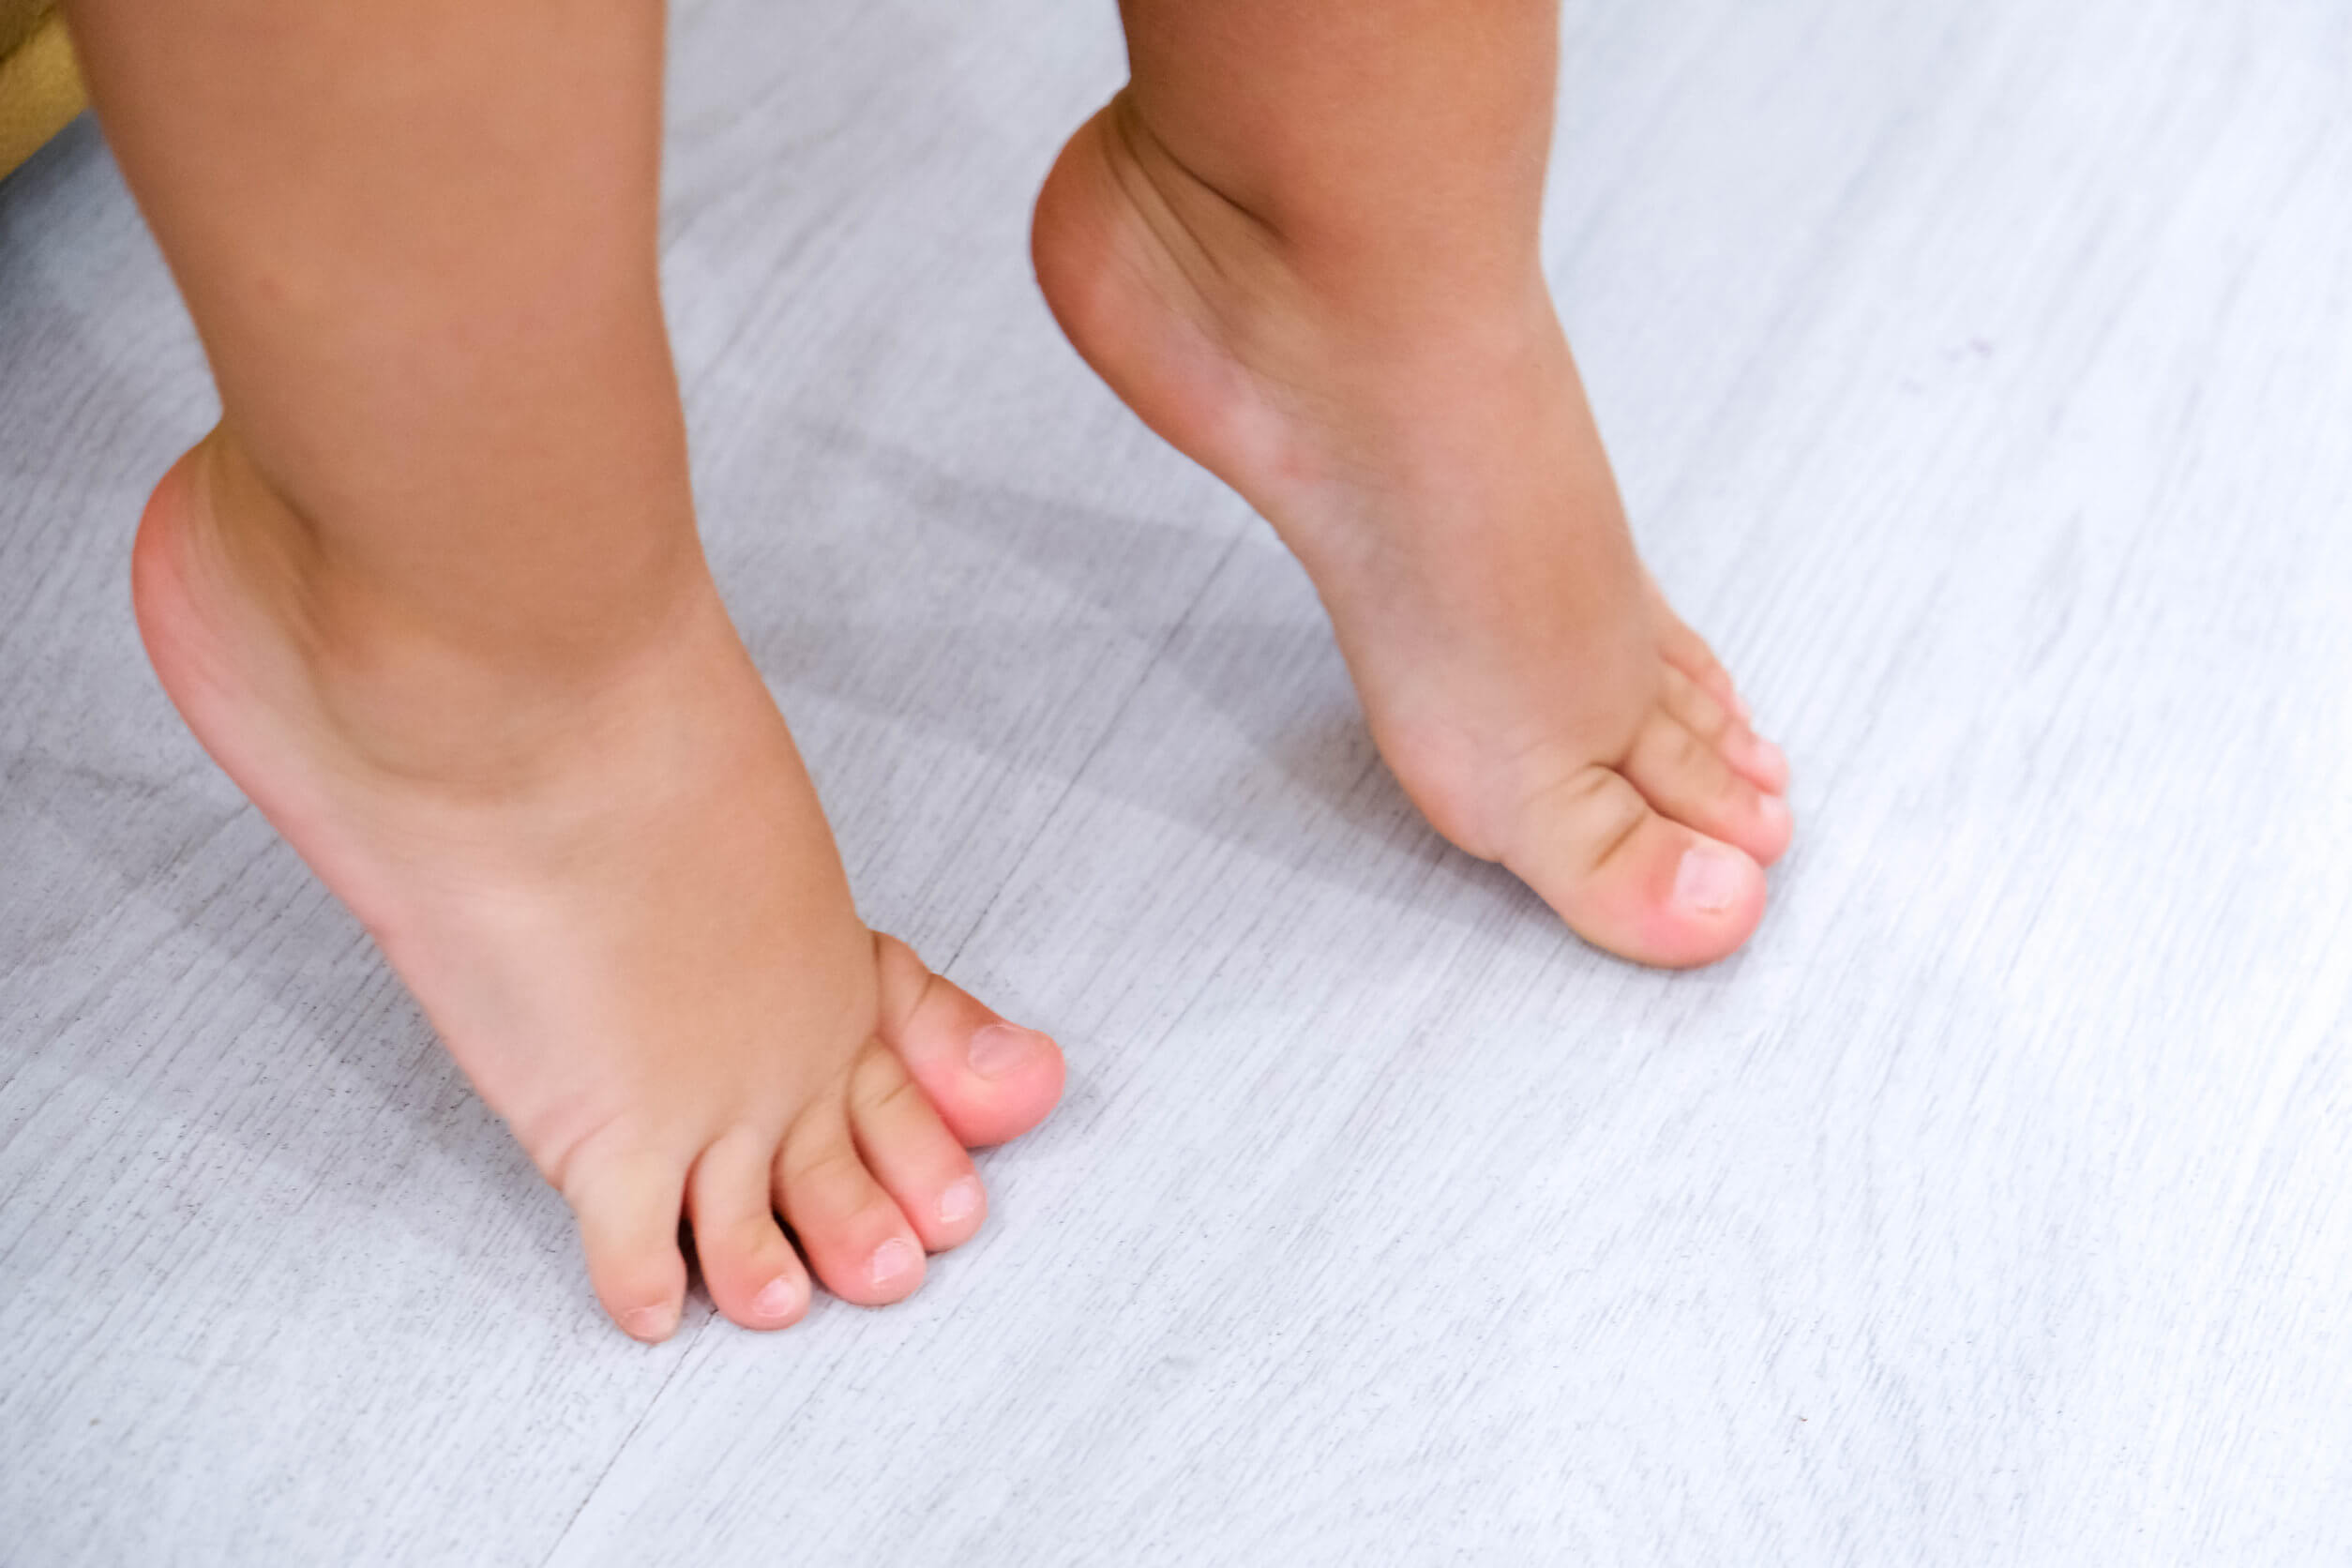 Calçado ortopédico infantil: quando ele é necessário?